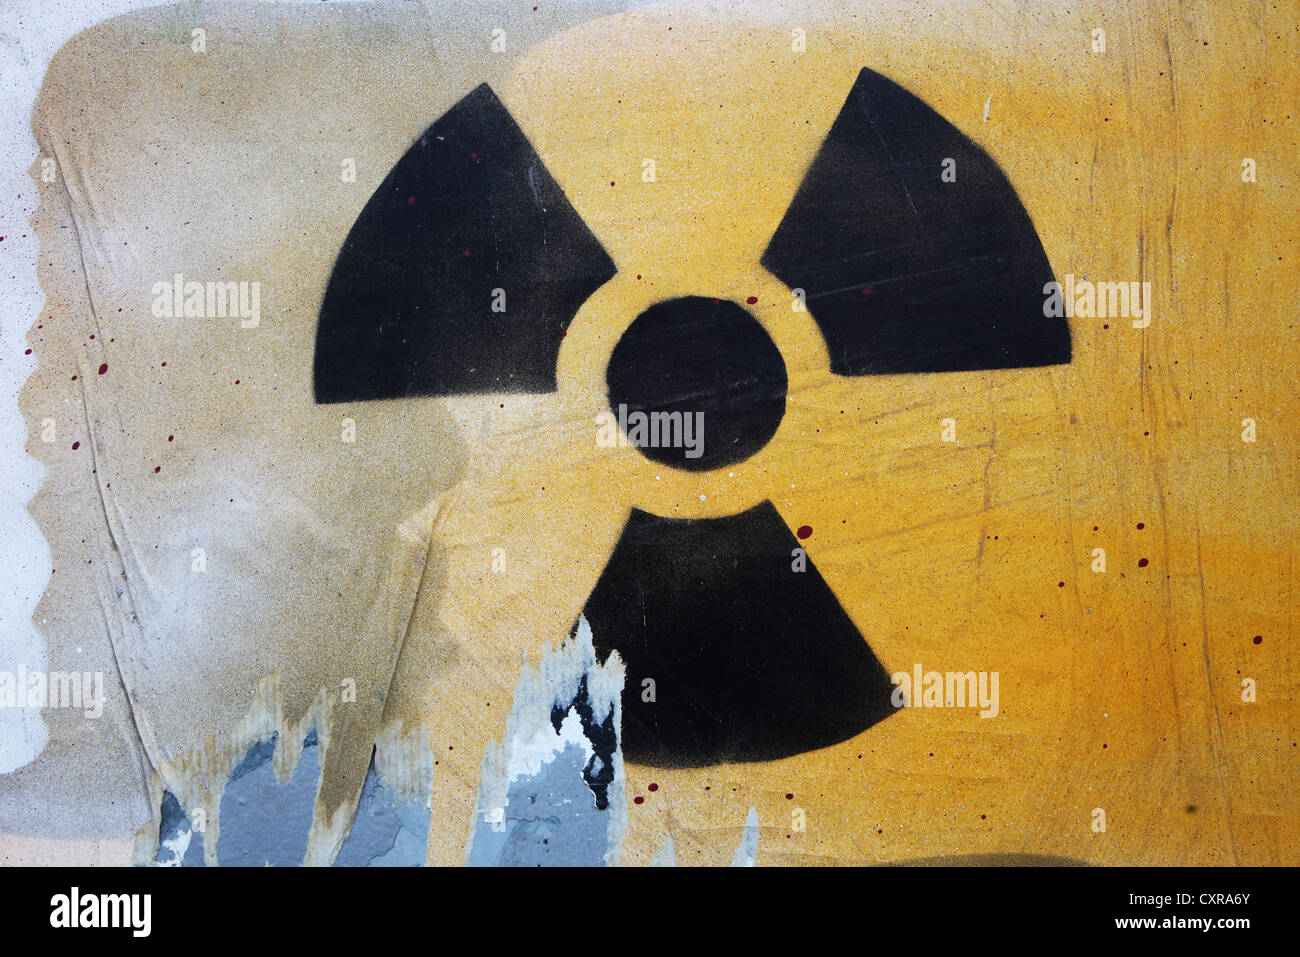 Art de rue, le symbole de la radioactivité et l'énergie nucléaire, vaporisé sur un mur Banque D'Images